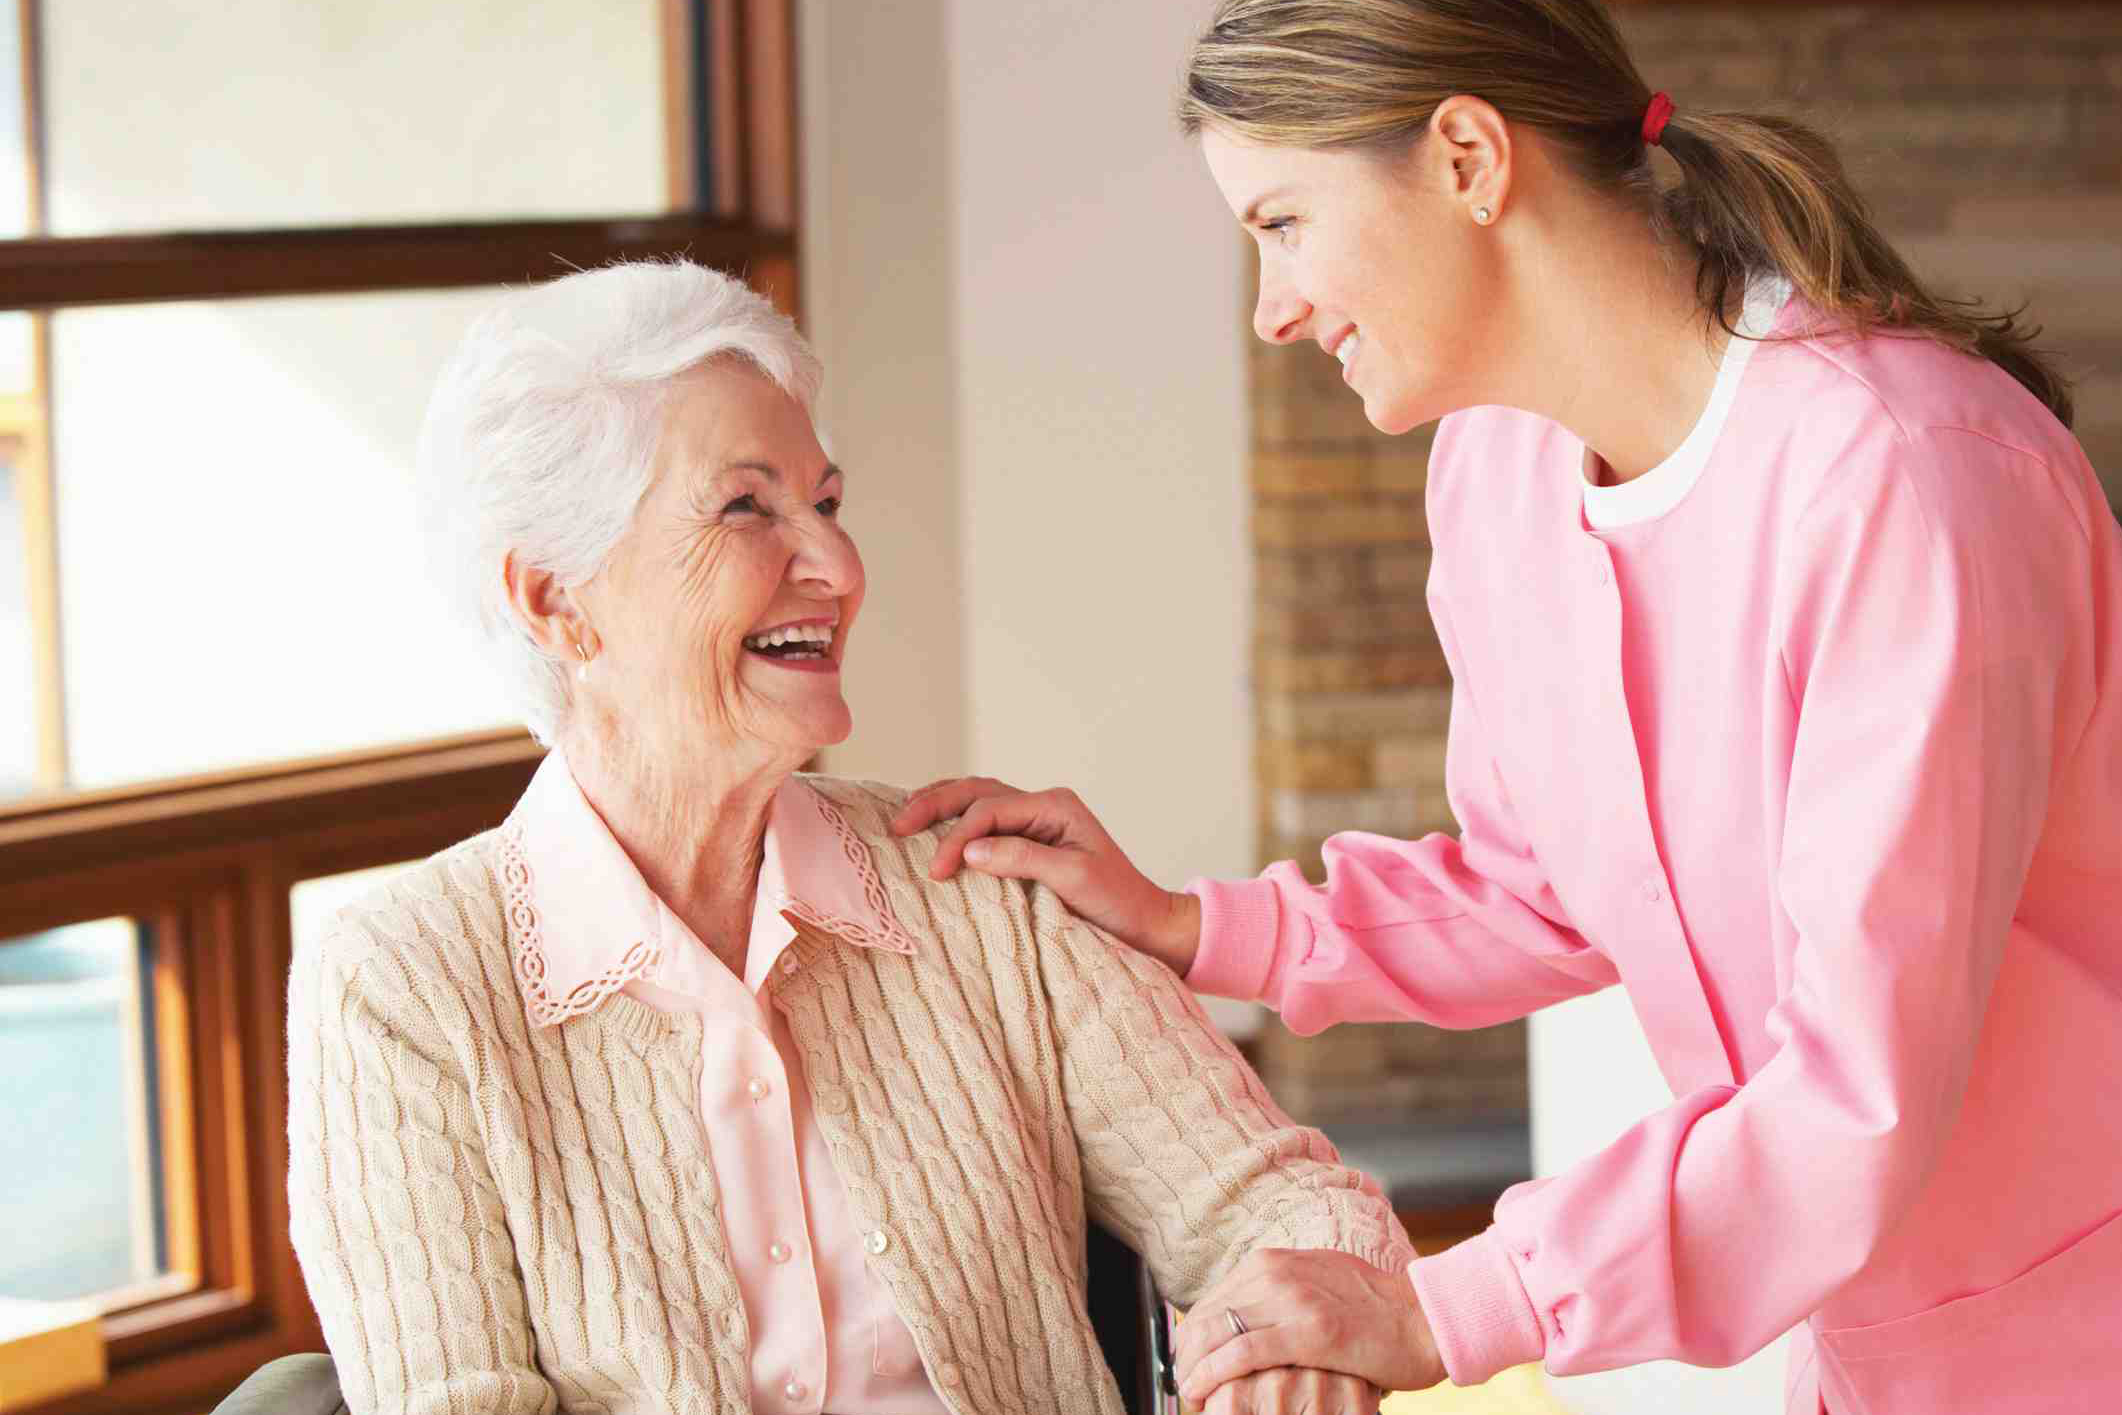 مراقبت از سالمند در منزل